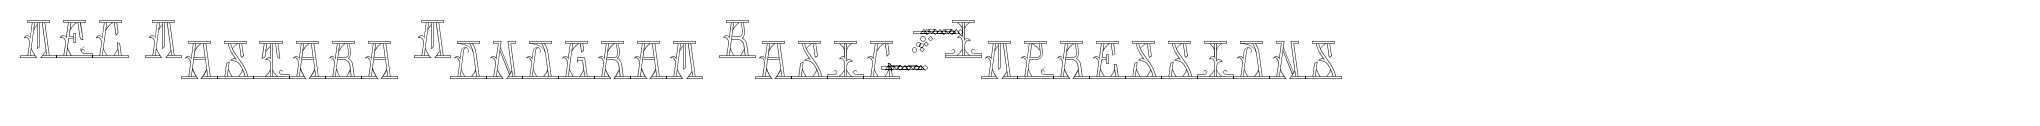 MFC Mastaba Monogram Basic 250 Impressions image